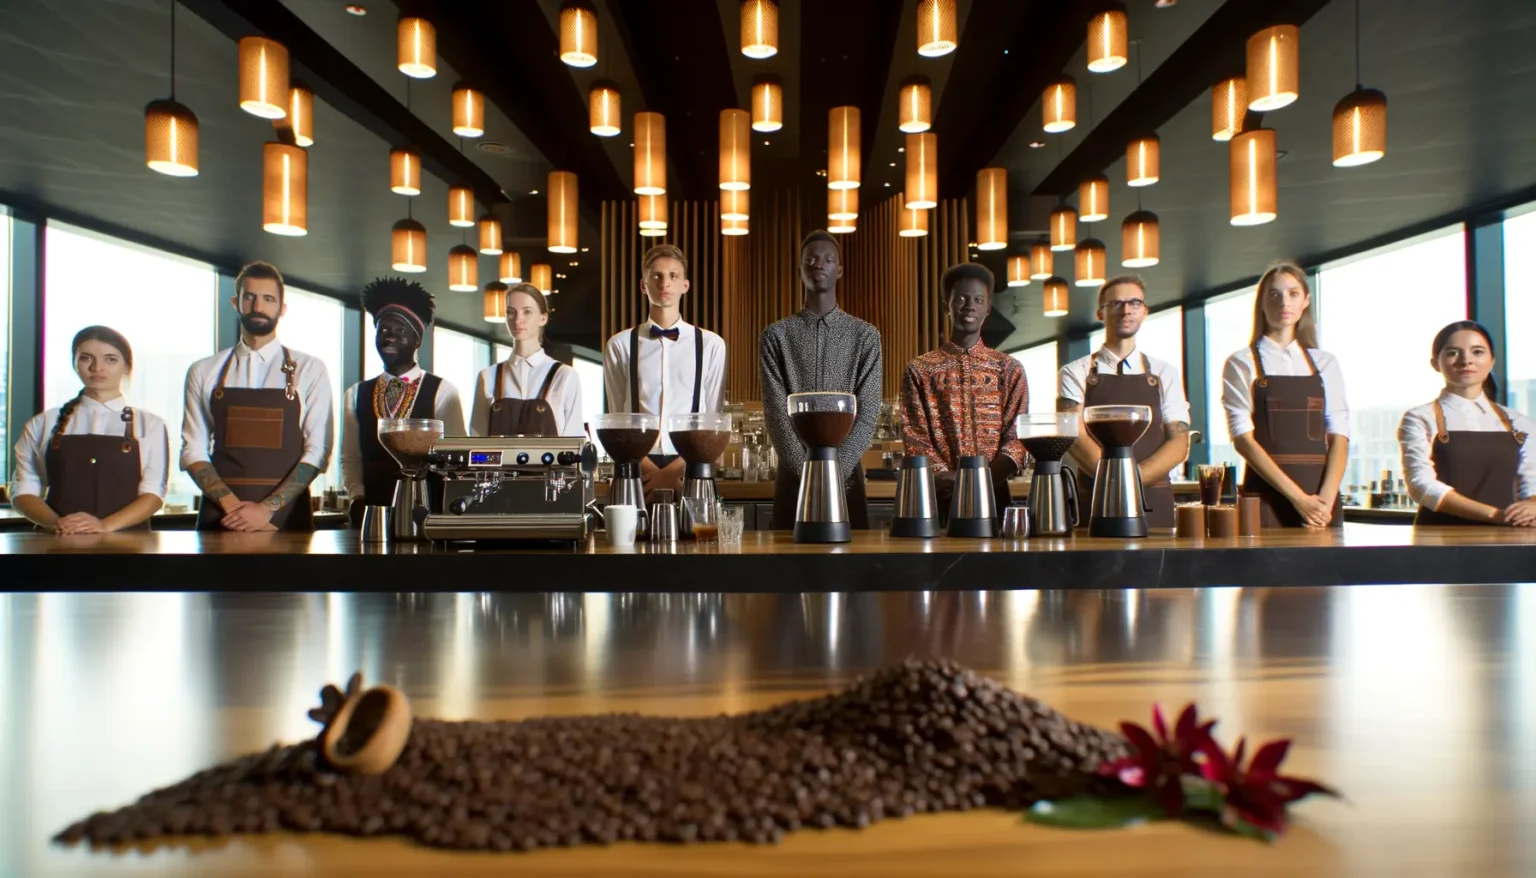 Eine Gruppe von Baristas verschiedener Ethnizitäten in einheitlicher Arbeitskleidung steht hinter einer Bar mit Espressomaschinen und Kaffeemühlen. Kaffeebohnen sind auf der Theke verstreut und eine kleine Kaffeekanne liegt auf der Seite. Im Hintergrund hängen stilvolle Pendelleuchten, die ein warmes Licht ausstrahlen.